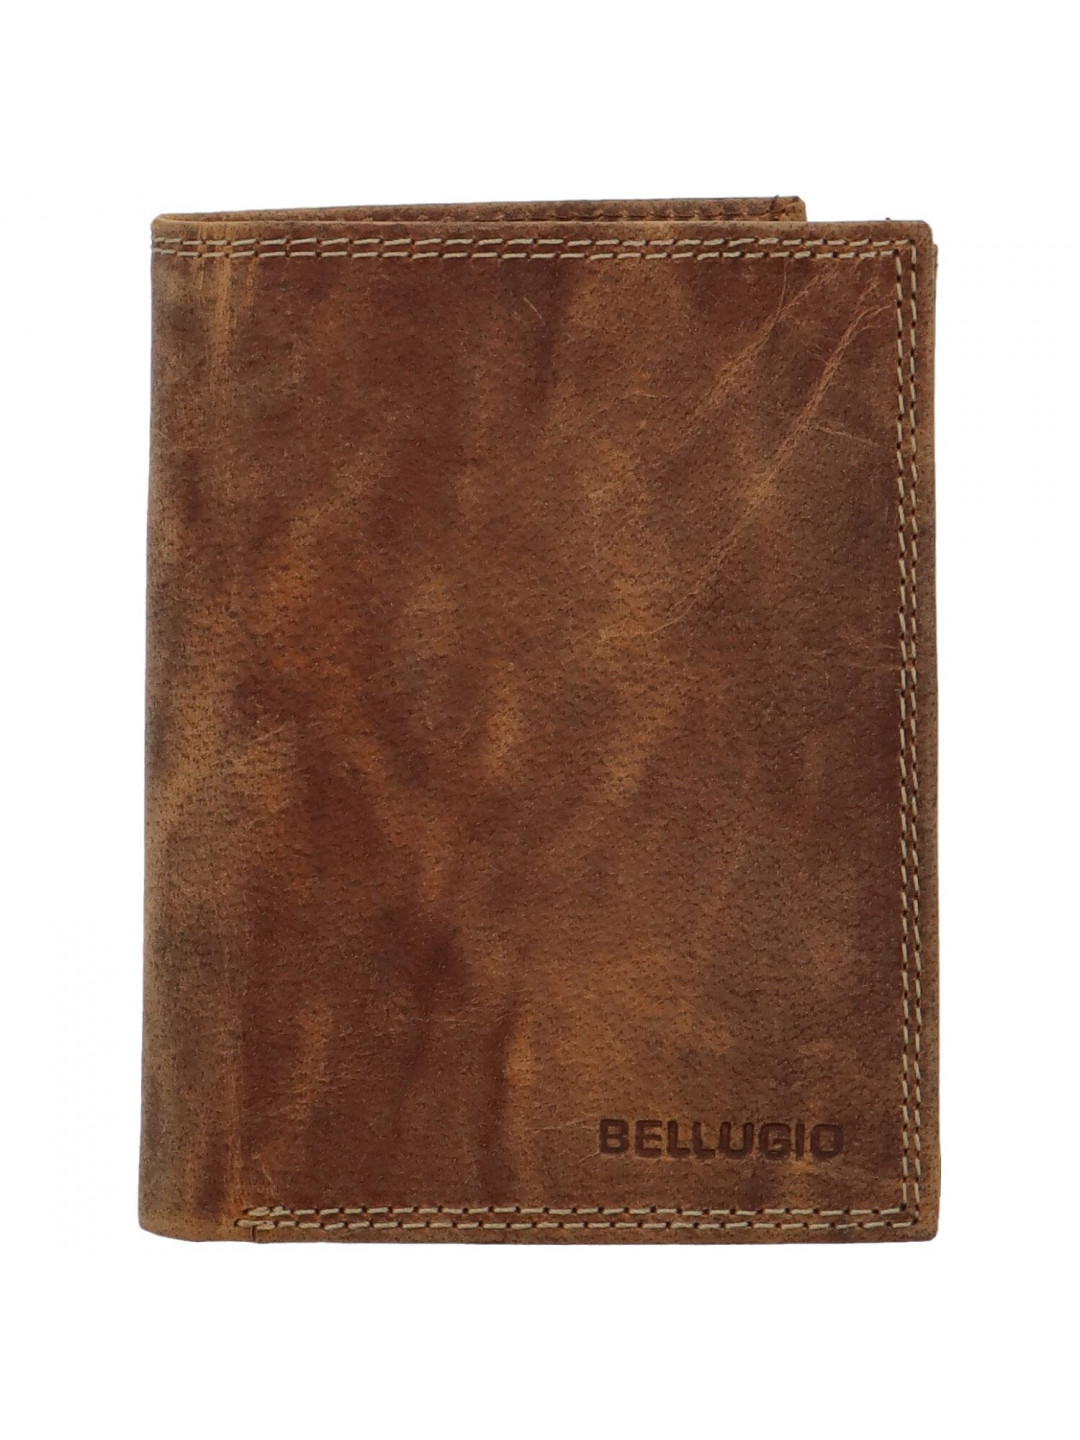 Pánská kožená peněženka světle hnědá – Bellugio Heliodor